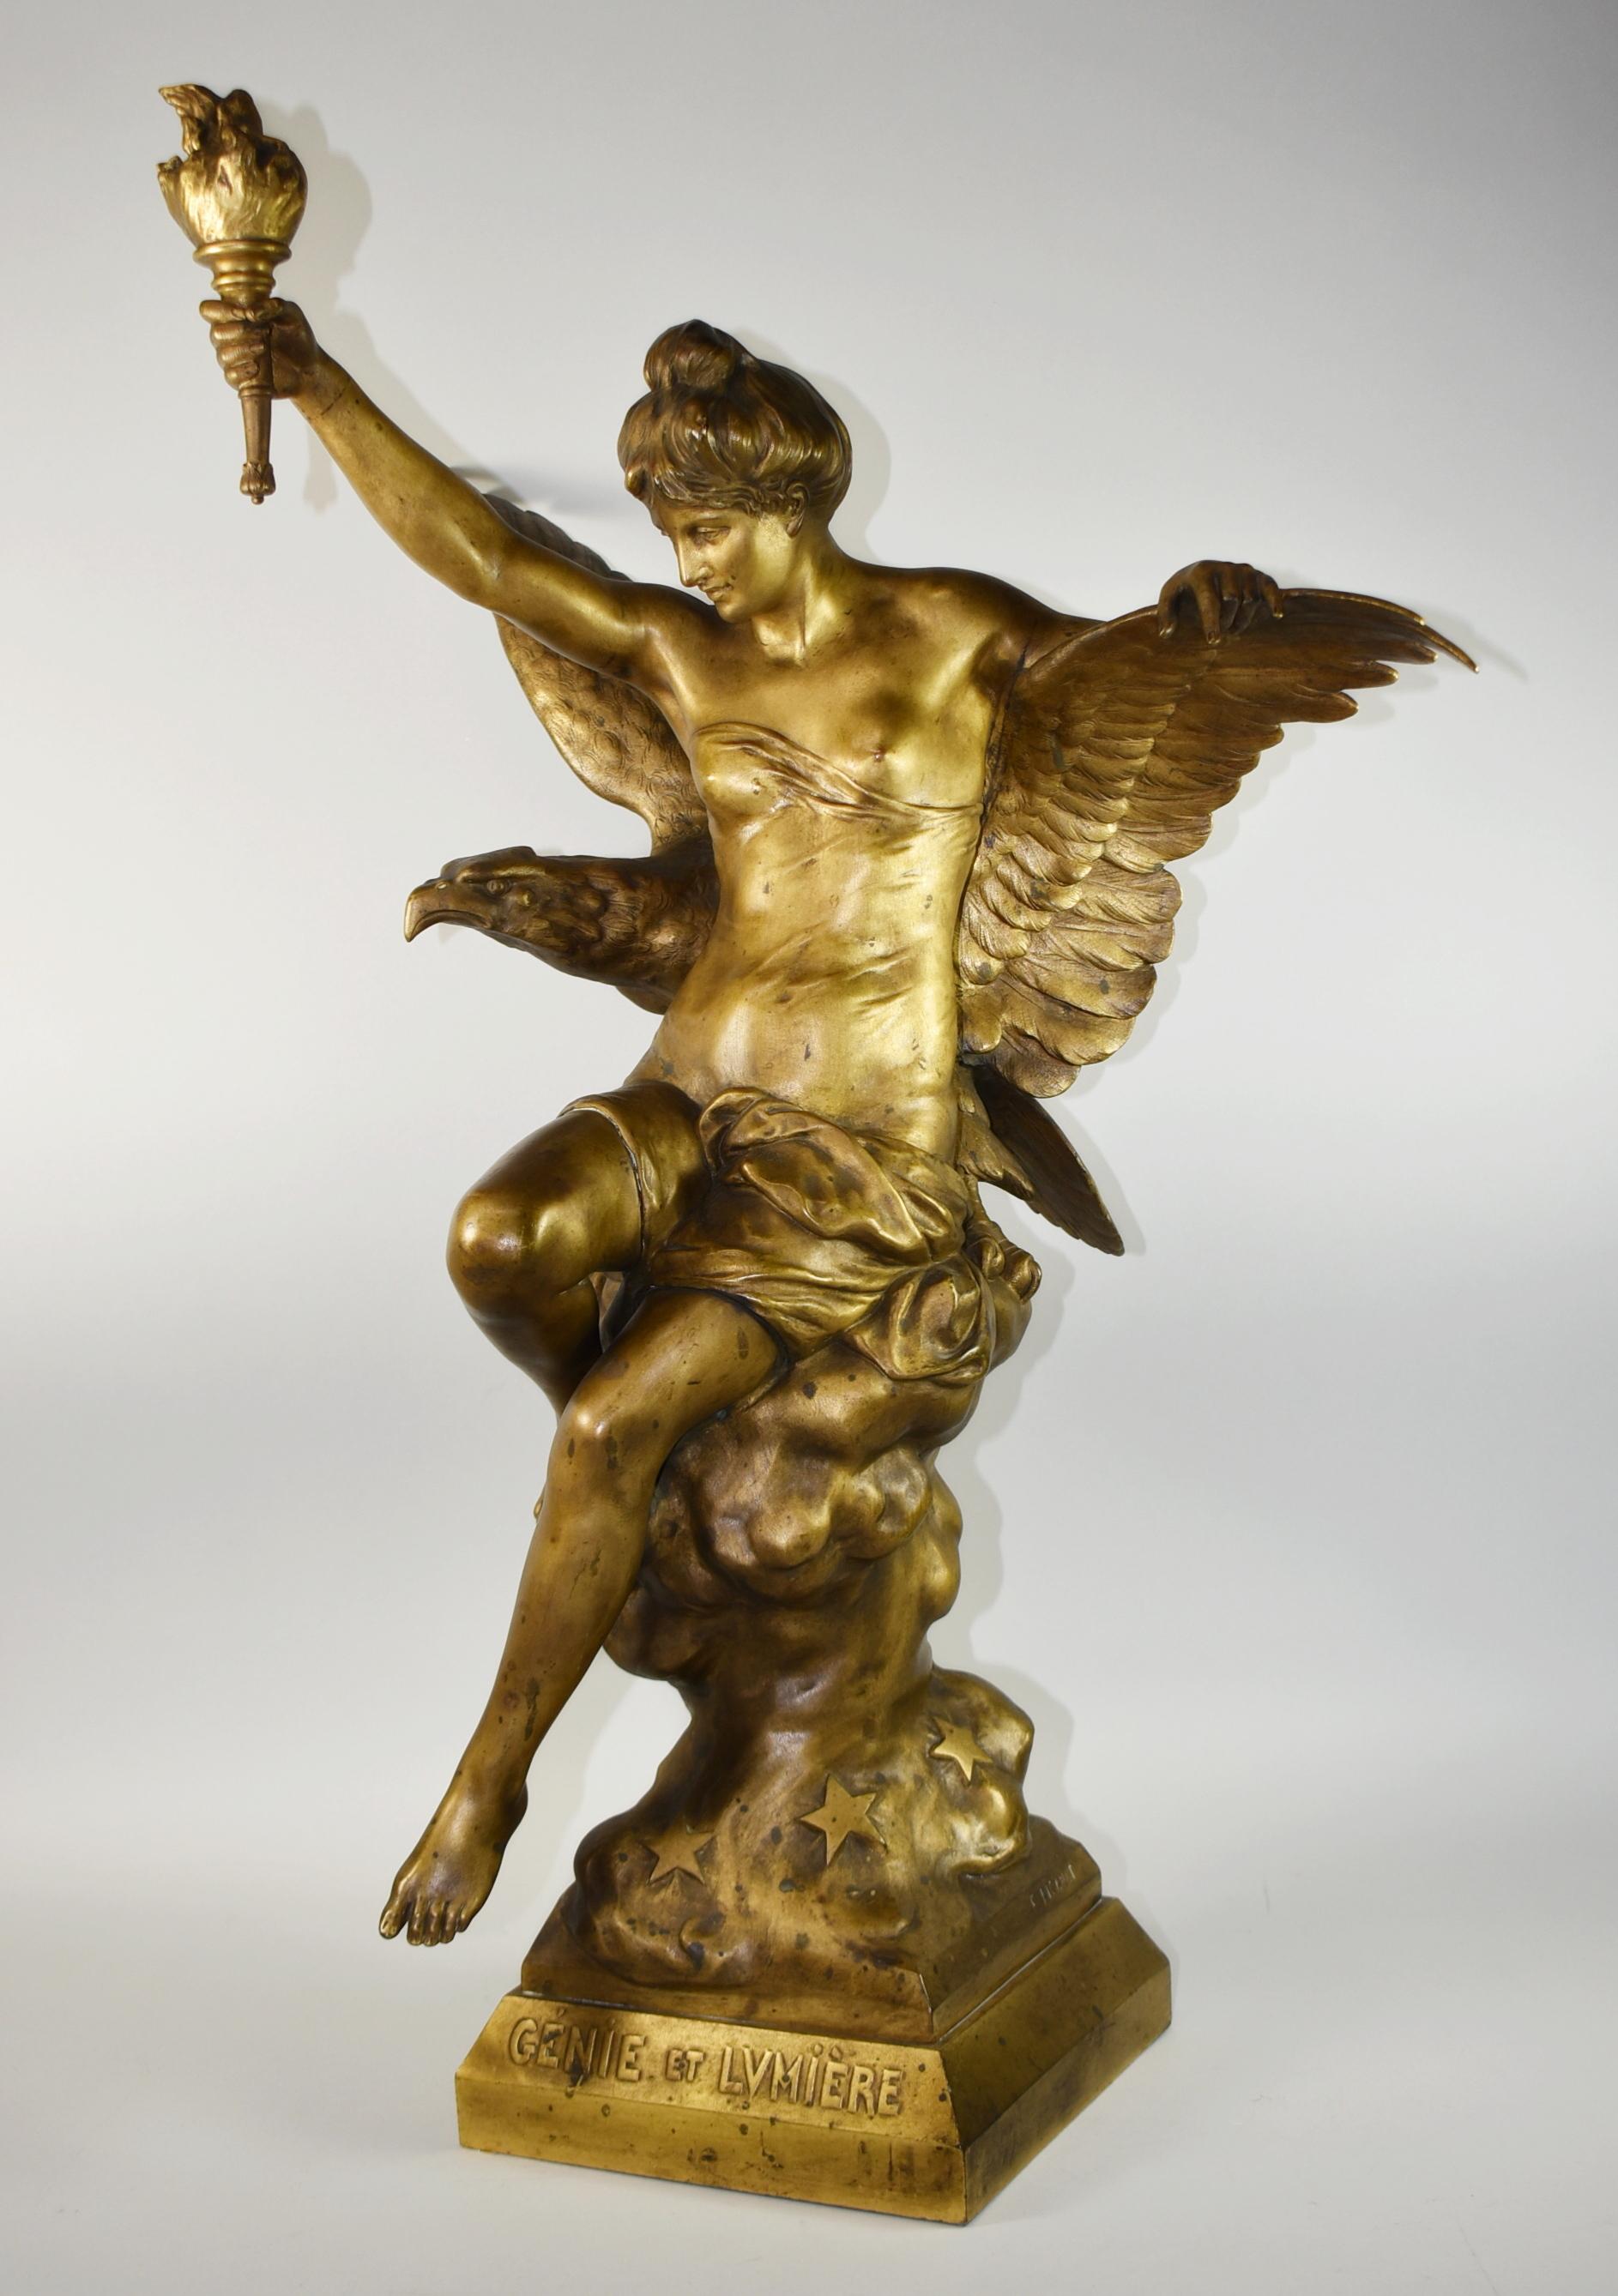 Schöne Bronzeskulptur von Emile Picault. Diese Statue zeigt eine Frau, die eine Fackel hält und auf einem Felsen mit Sternen sitzt. Ein Adler mit ausgebreiteten Flügeln steht hinter ihr. Der Adler hat tolle Details im Gefieder und am Kopf. Die